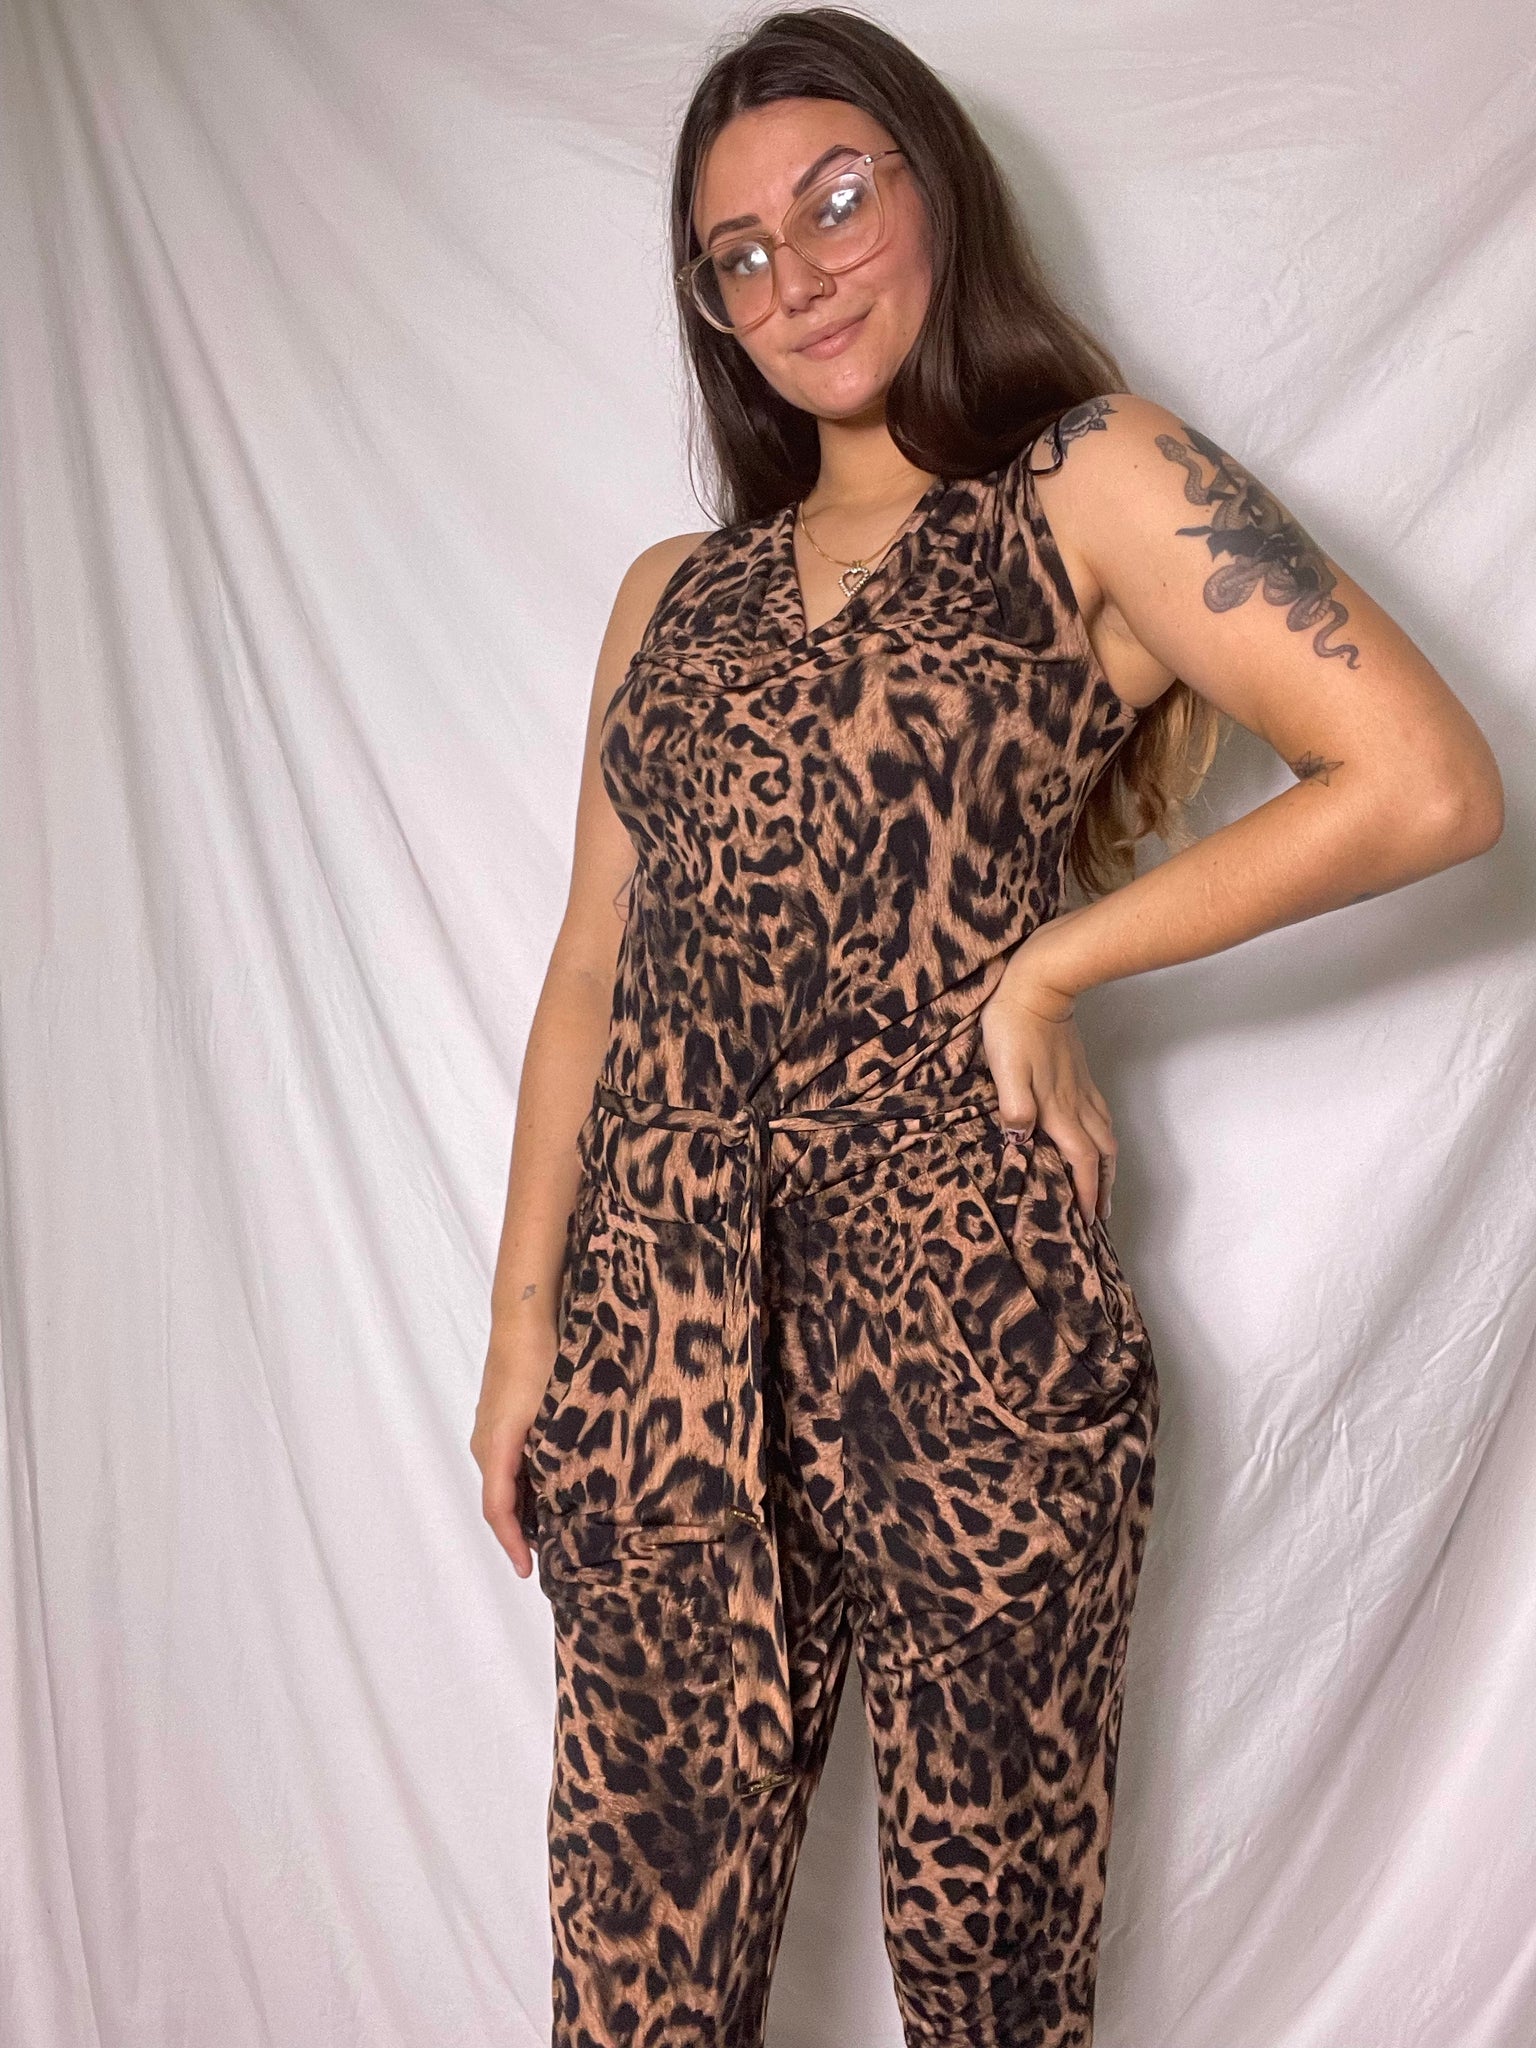 NEW Michael Kors leopard jumpsuit, Size M